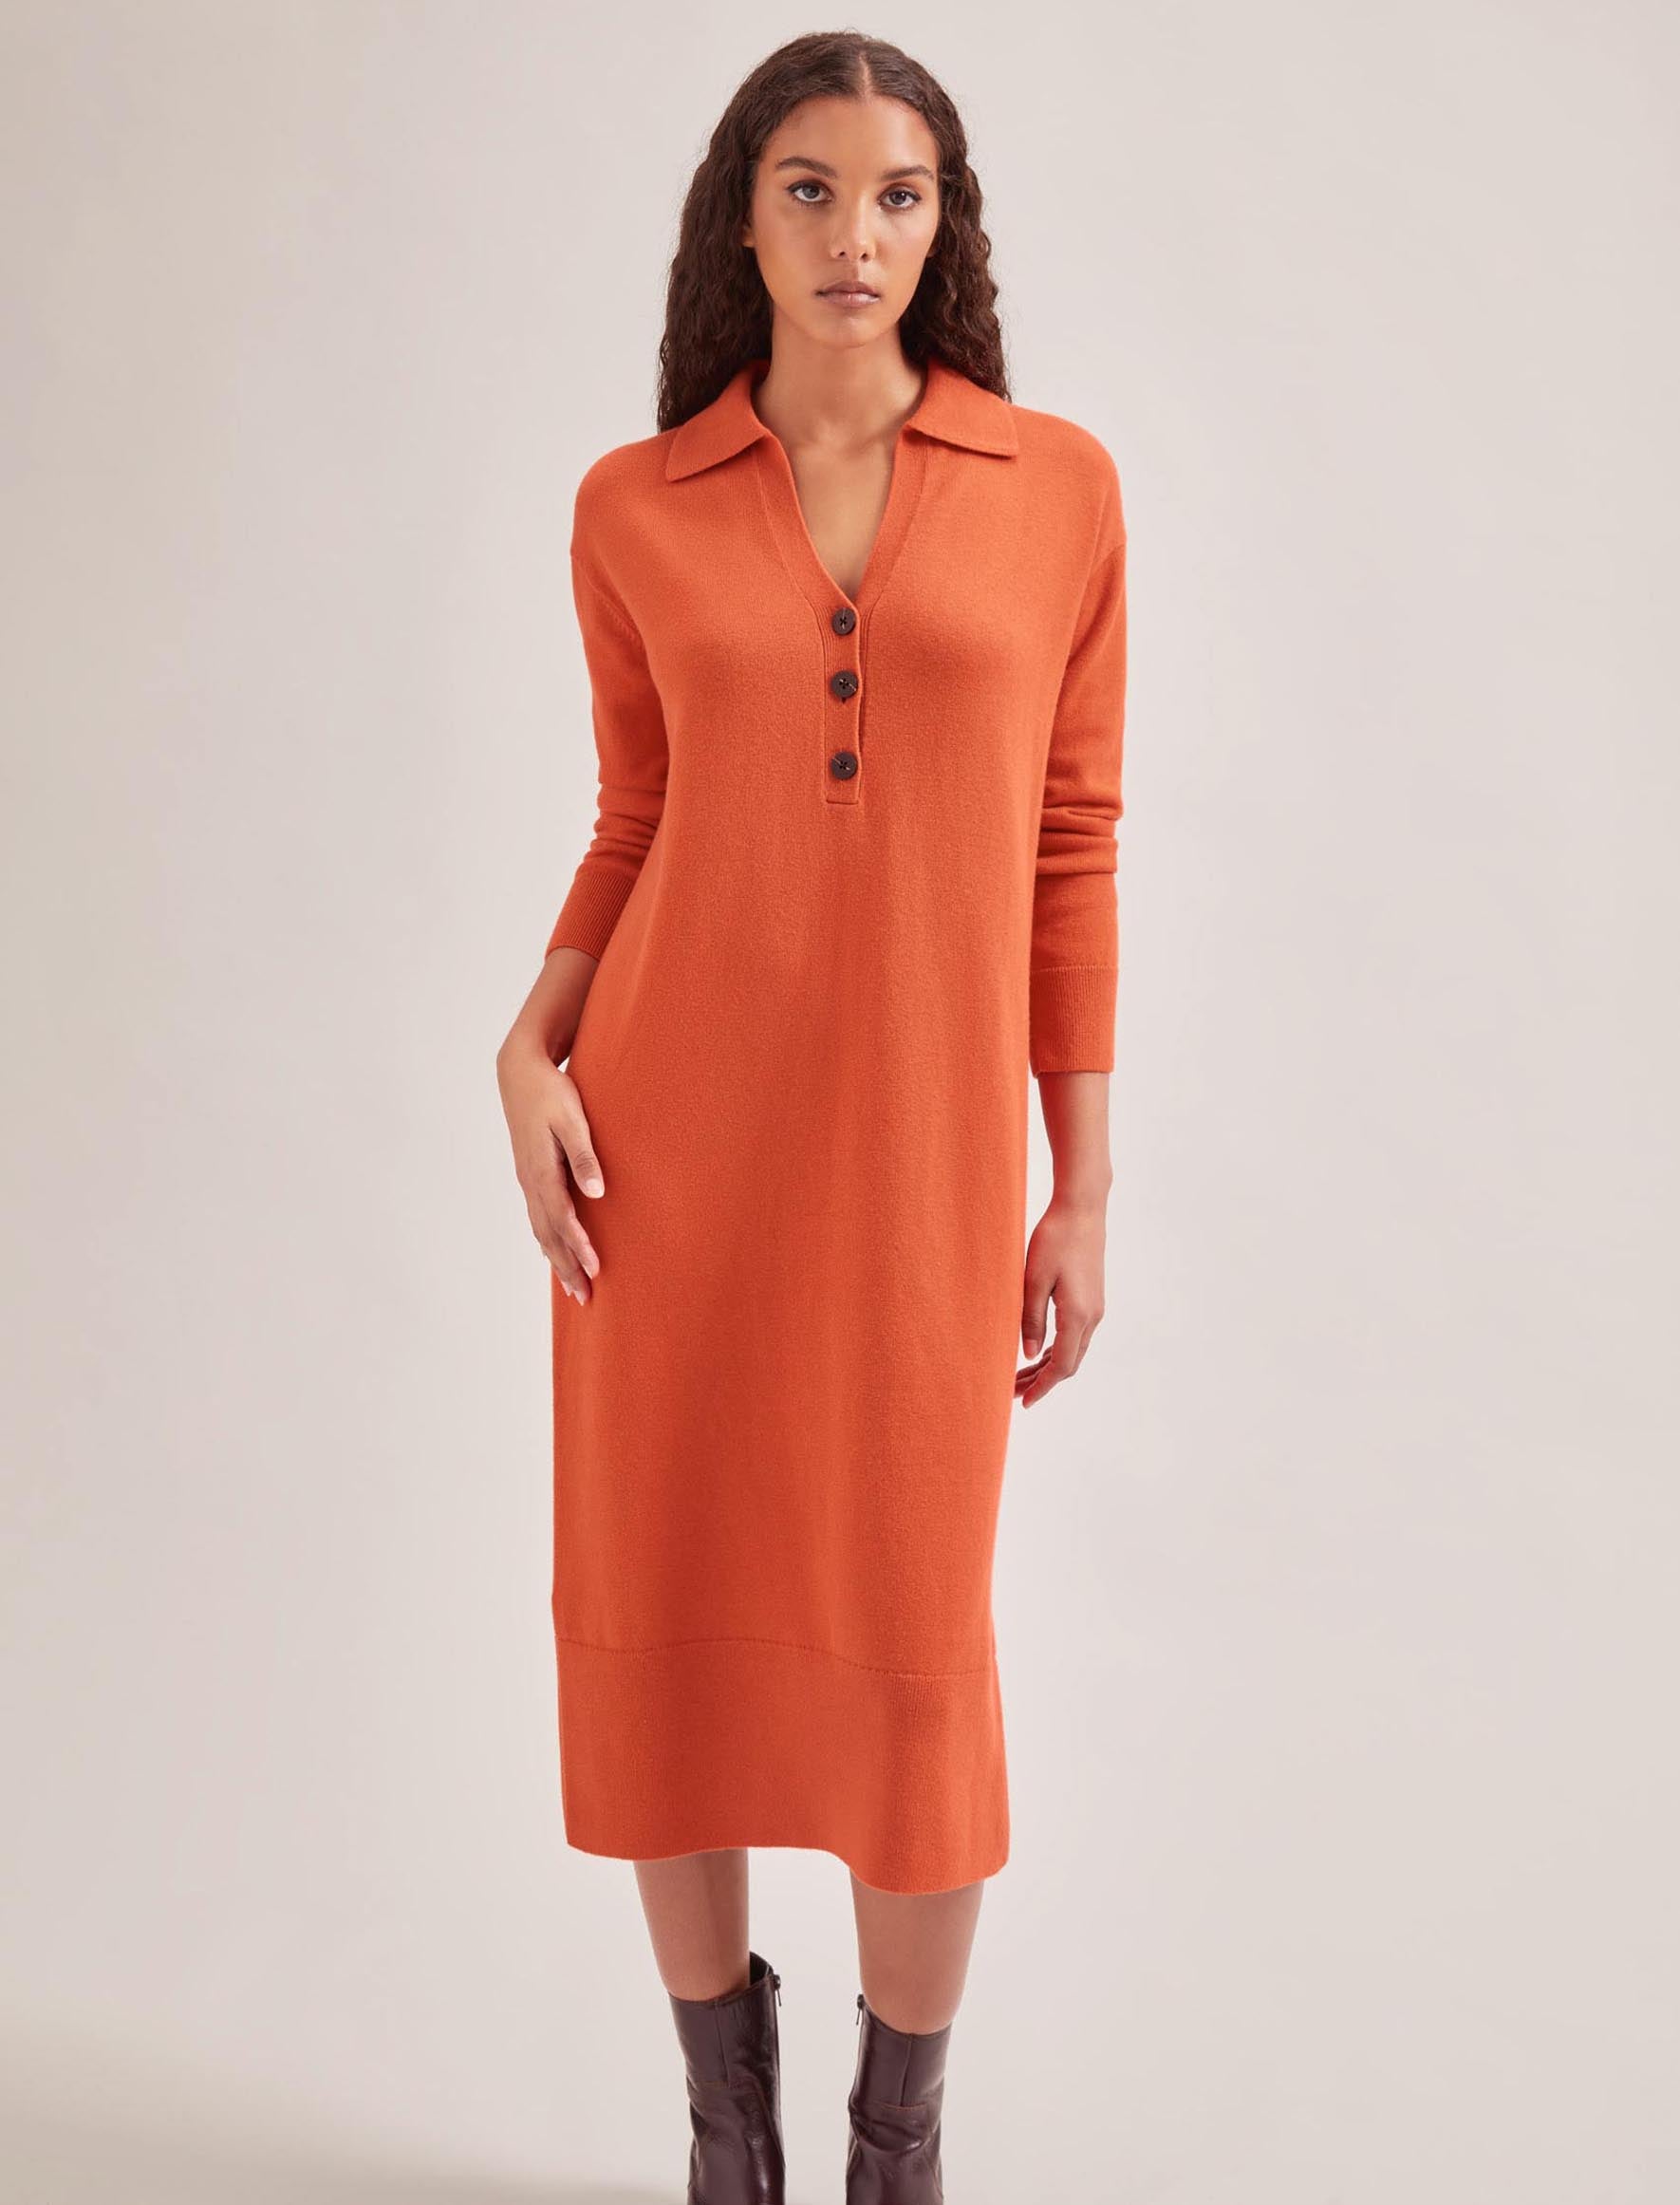 Cefinn Eleanor Wool Knit Dress - Orange